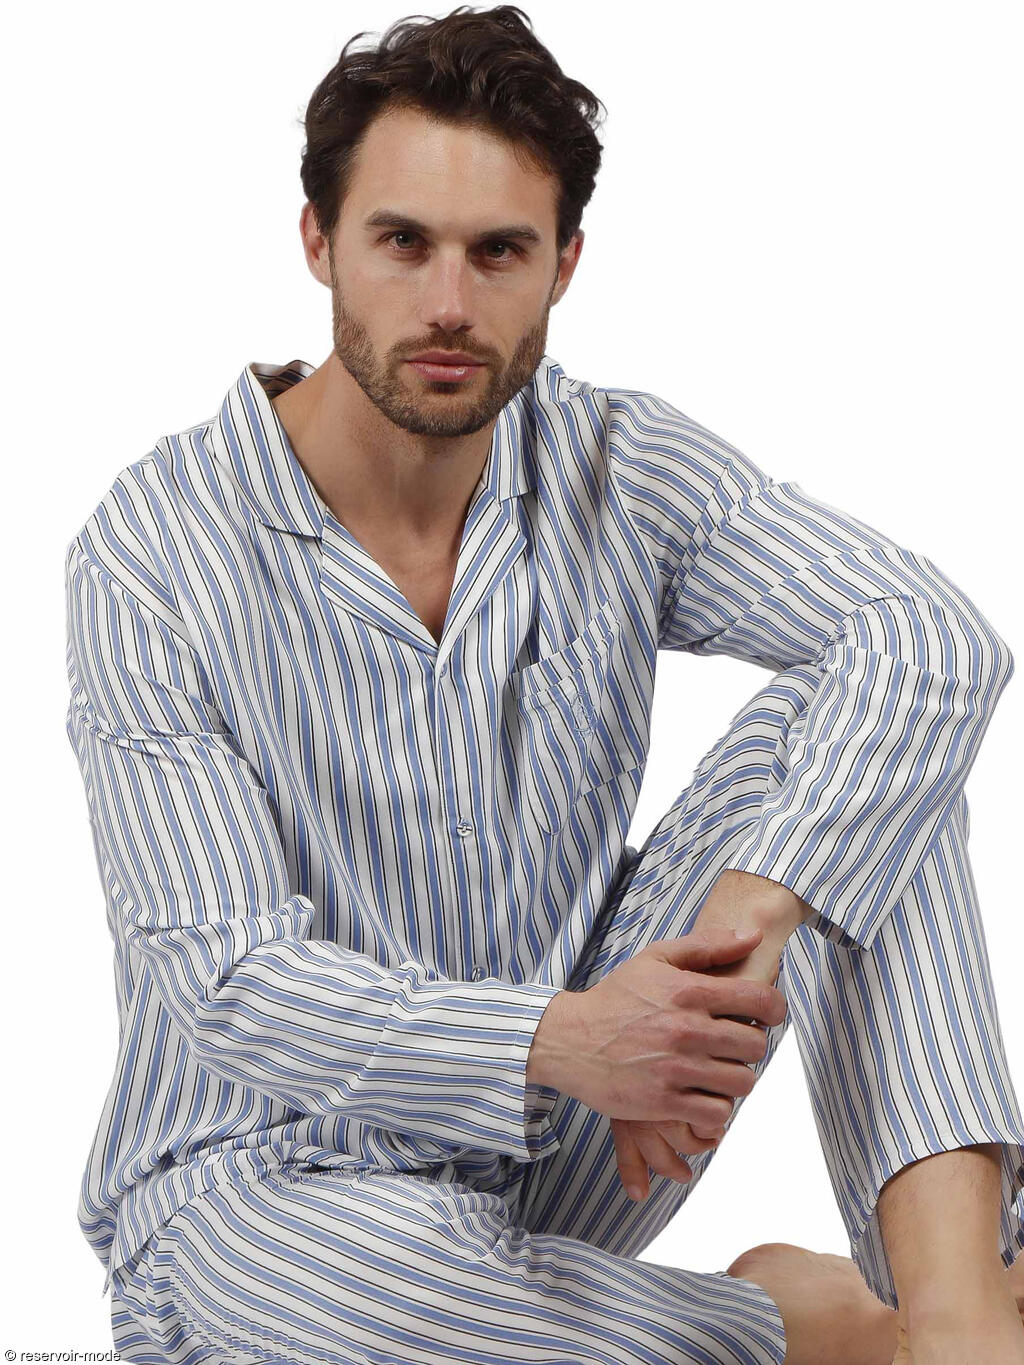 Pyjama tenue pantalon et chemise Fashion Stripes - Réservoir Mode